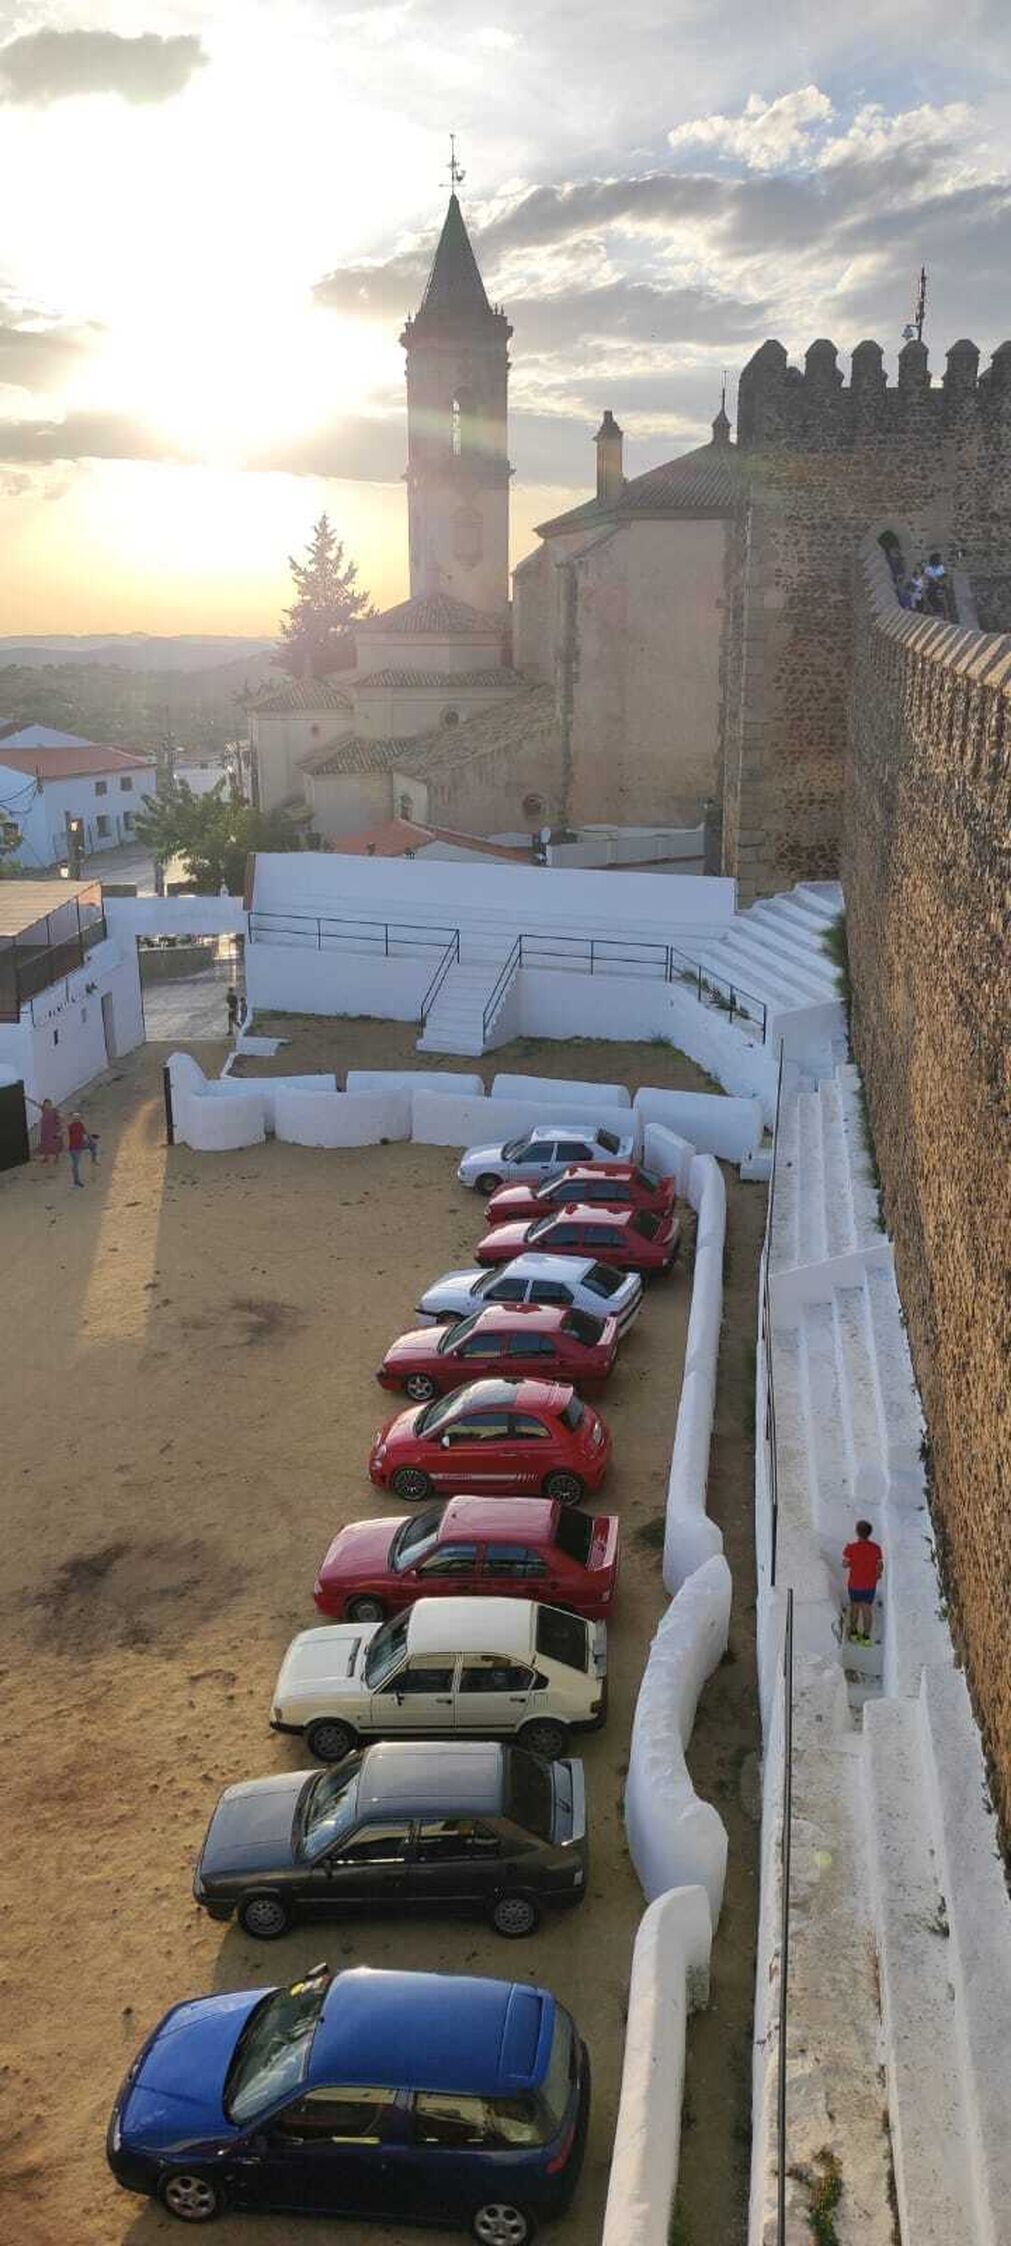 La plaza de toros m&aacute;s curiosa de Espa&ntilde;a se encuentra junto al bello castillo de este pueblo de Huelva